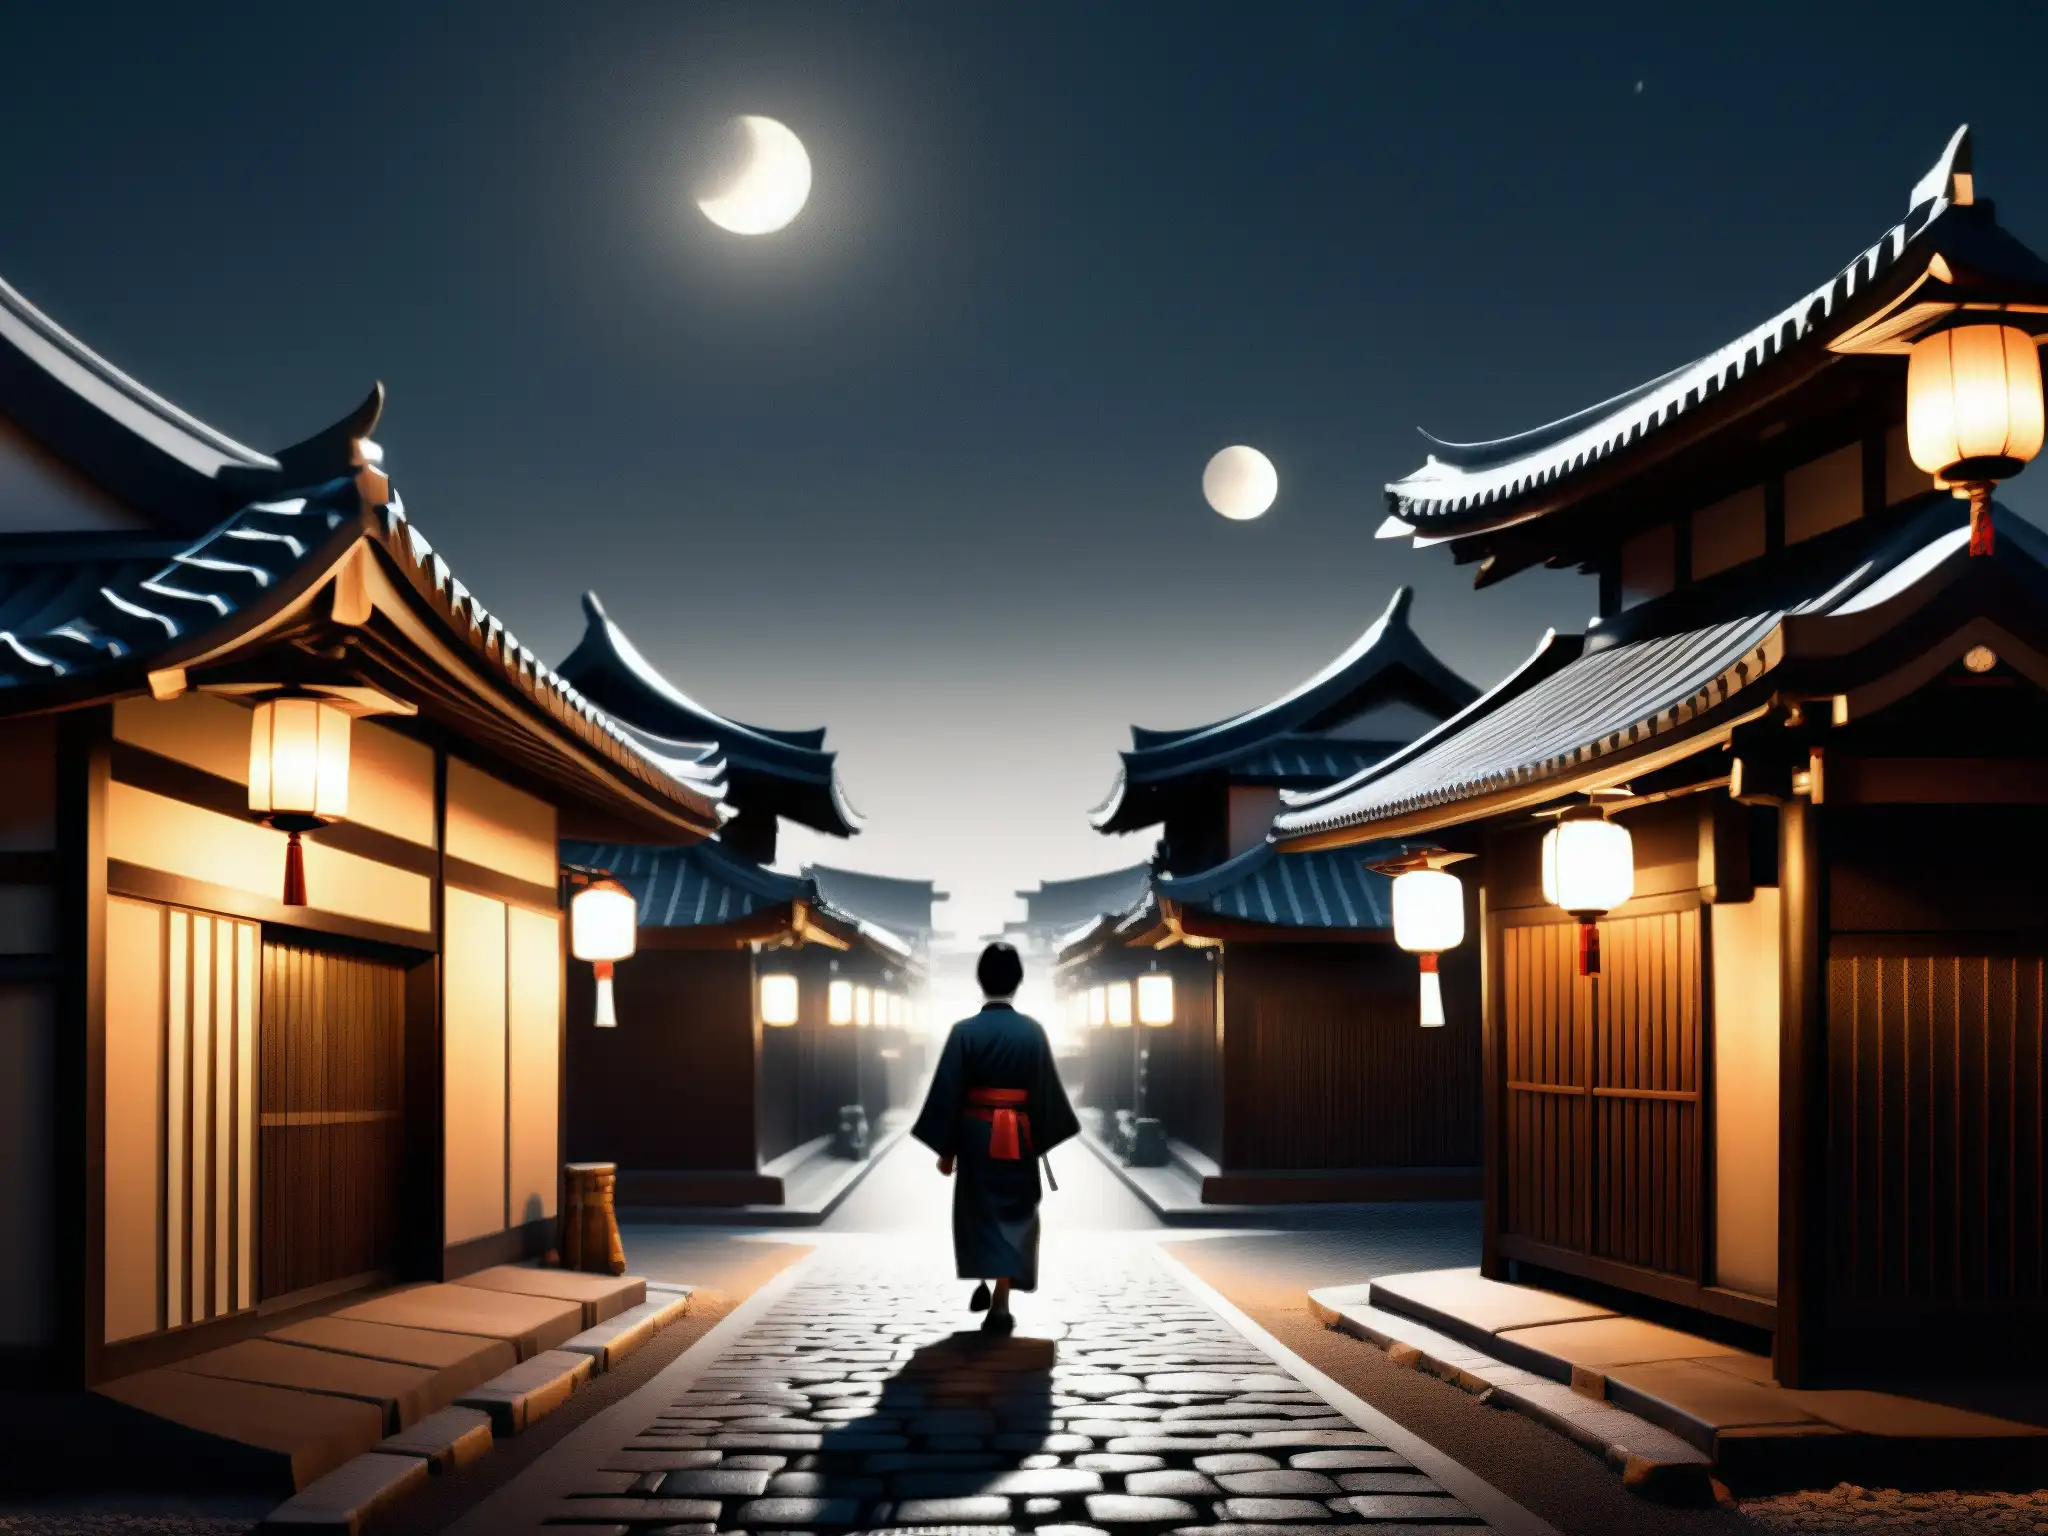 Detallada ilustración en blanco y negro de una calle tradicional japonesa de noche, iluminada por faroles brillantes